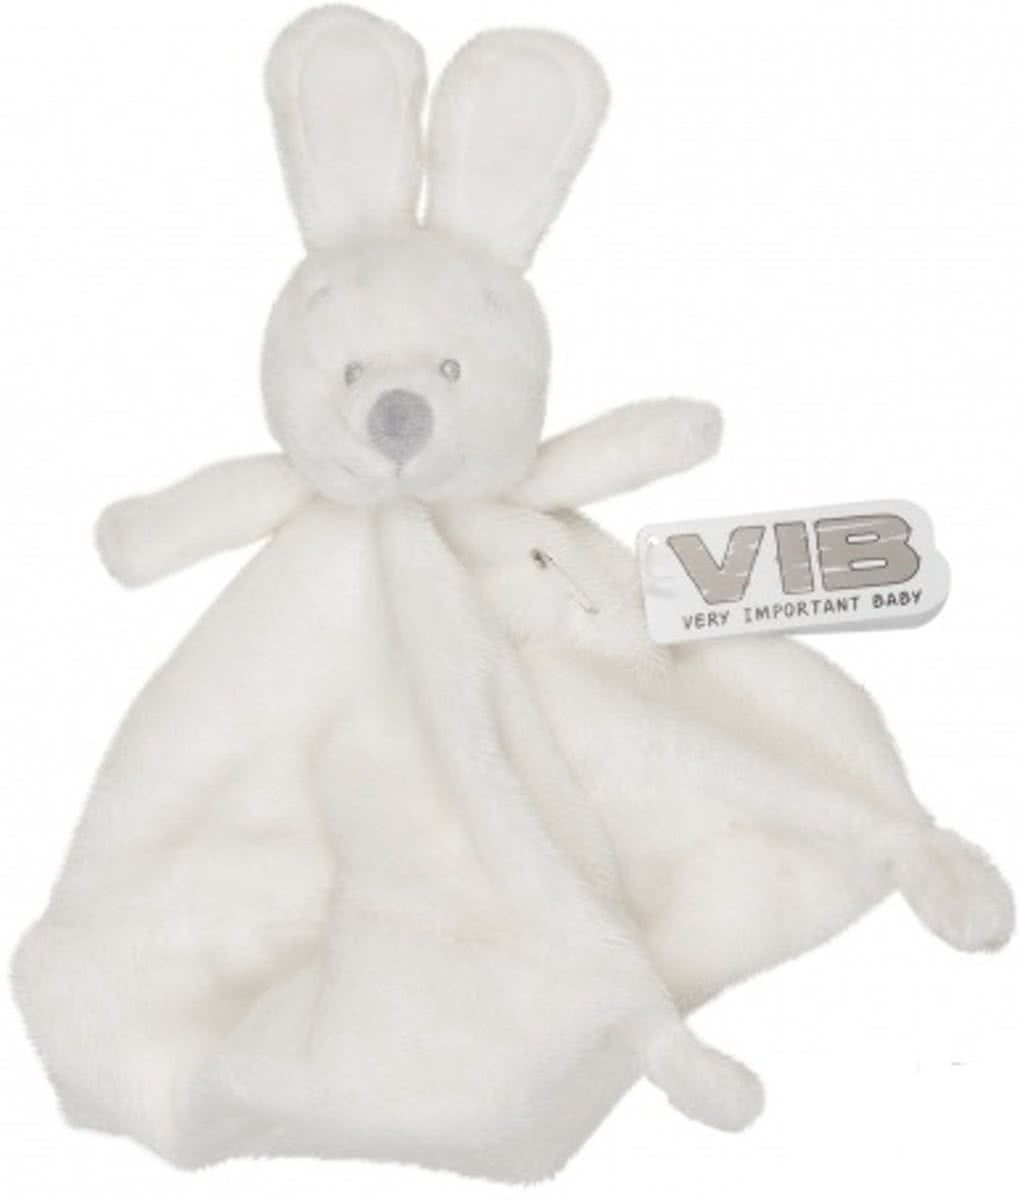 Pluche Konijn Very Important Rabbit Knuffeldoekje Wit